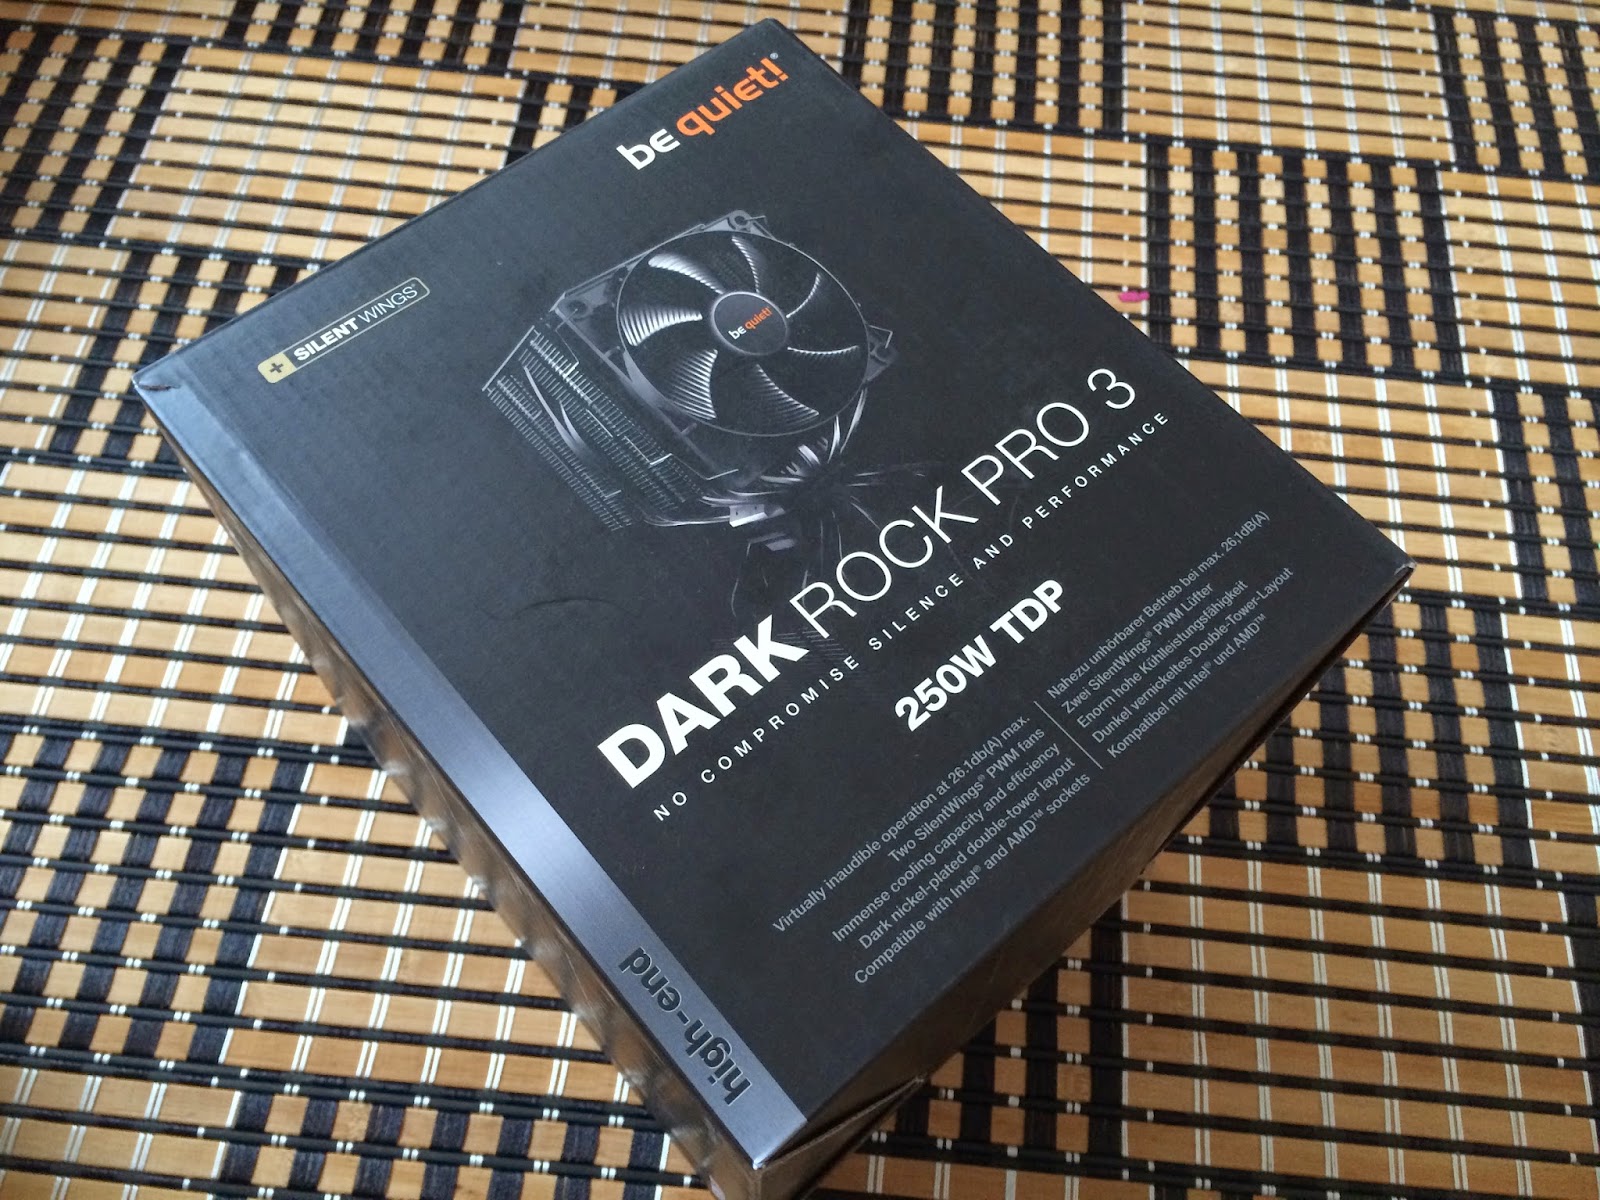 Unboxing & Review: be quiet! Dark Rock Pro 3 4